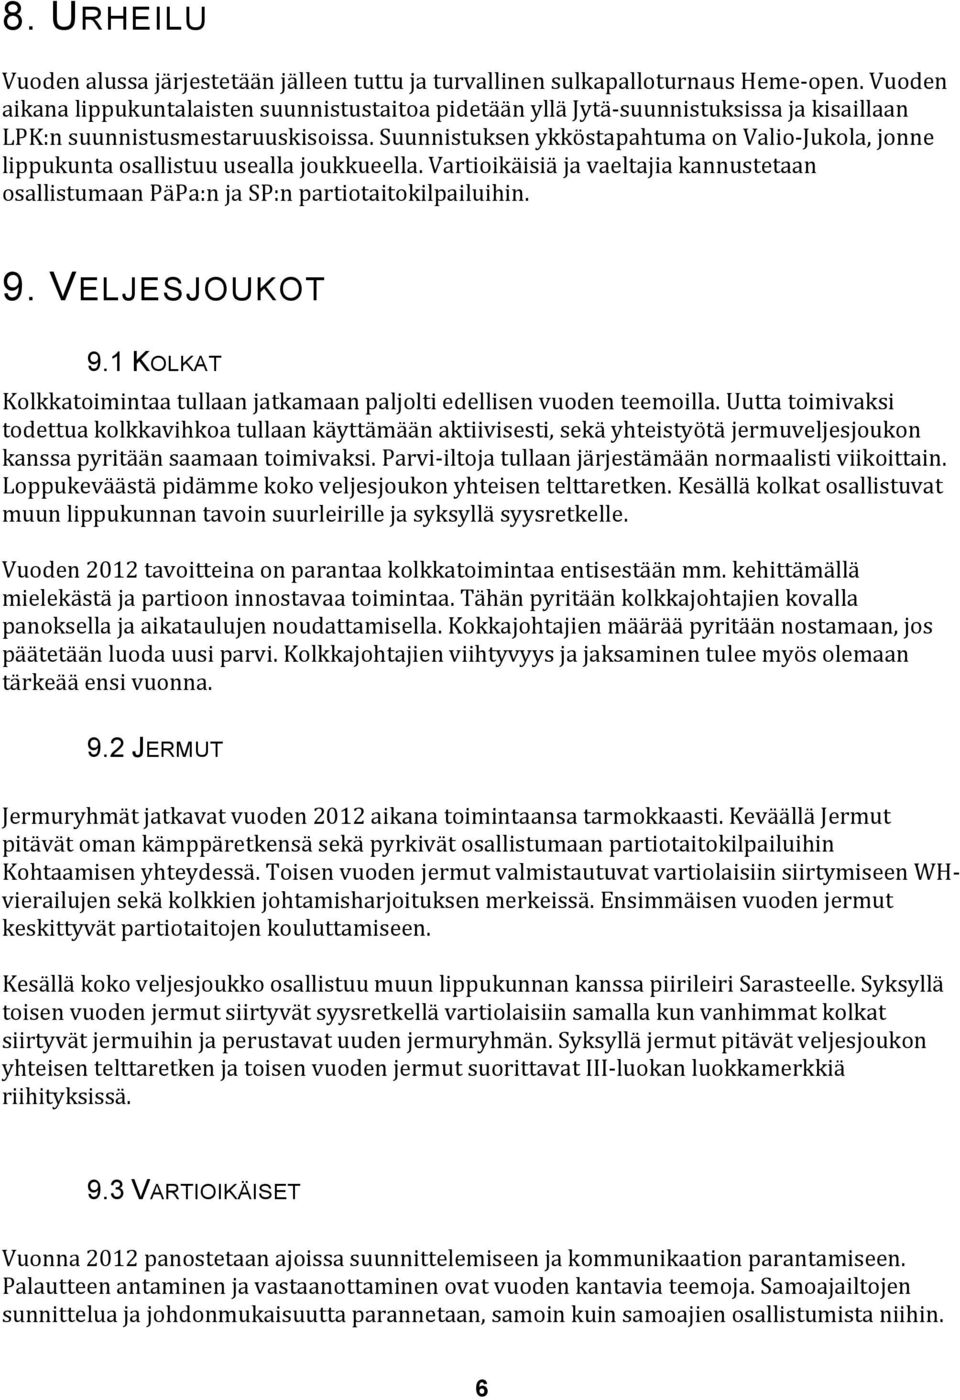 Suunnistuksen ykköstapahtuma on Valio- Jukola, jonne lippukunta osallistuu usealla joukkueella. Vartioikäisiä ja vaeltajia kannustetaan osallistumaan PäPa:n ja SP:n partiotaitokilpailuihin. 9.